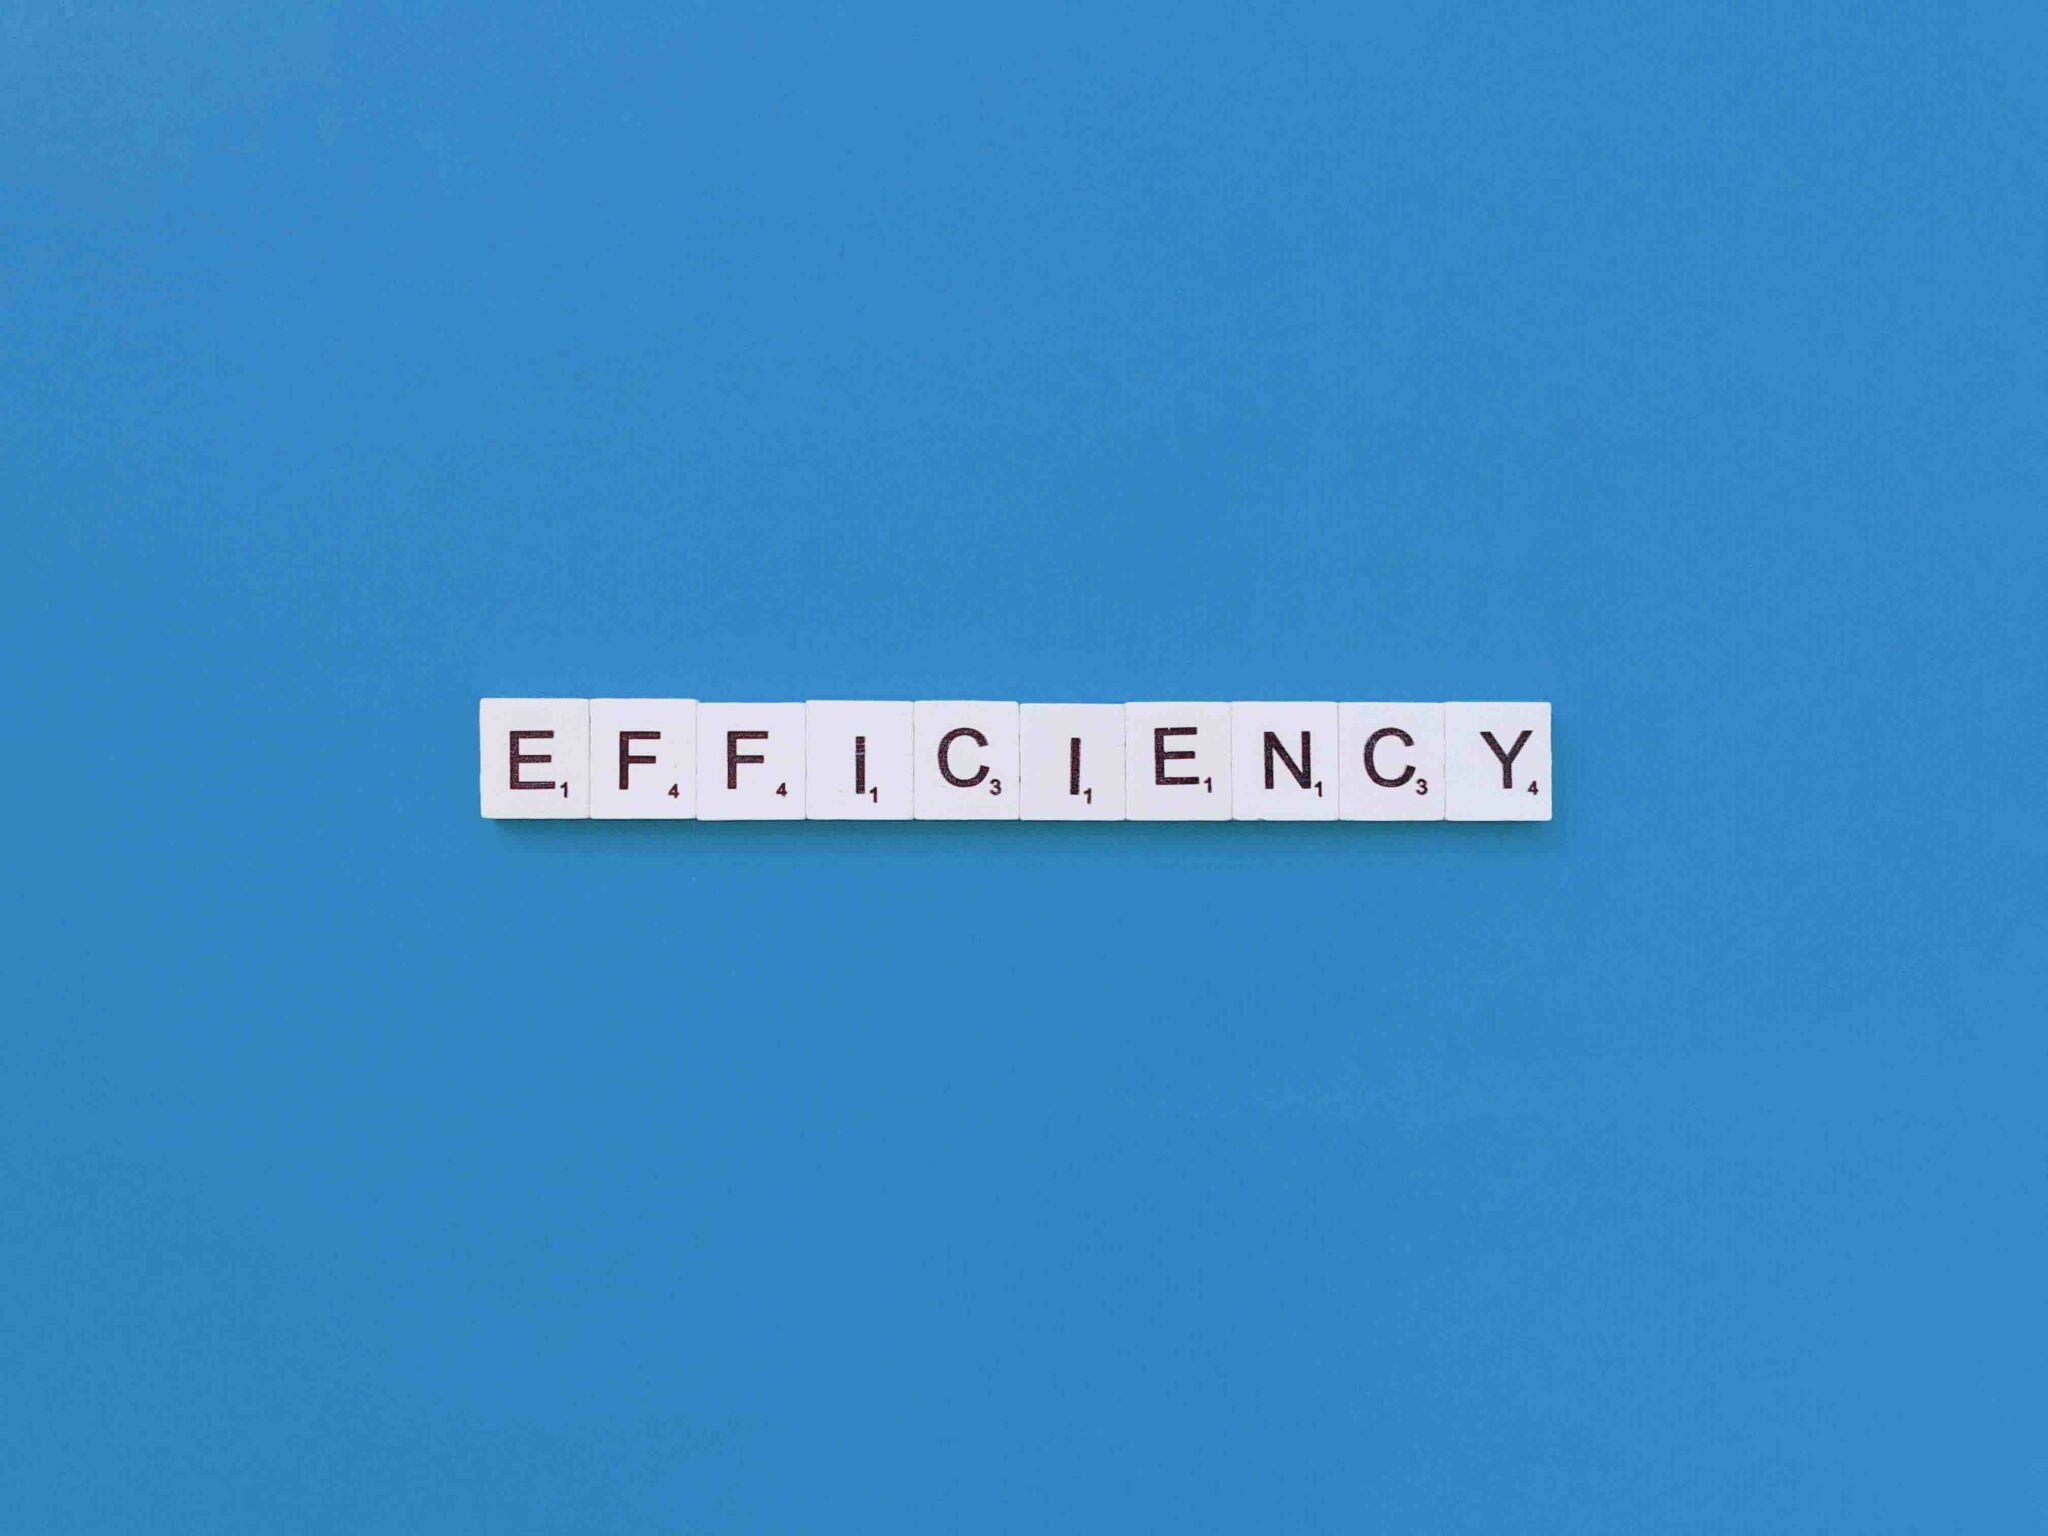 the word efficiency